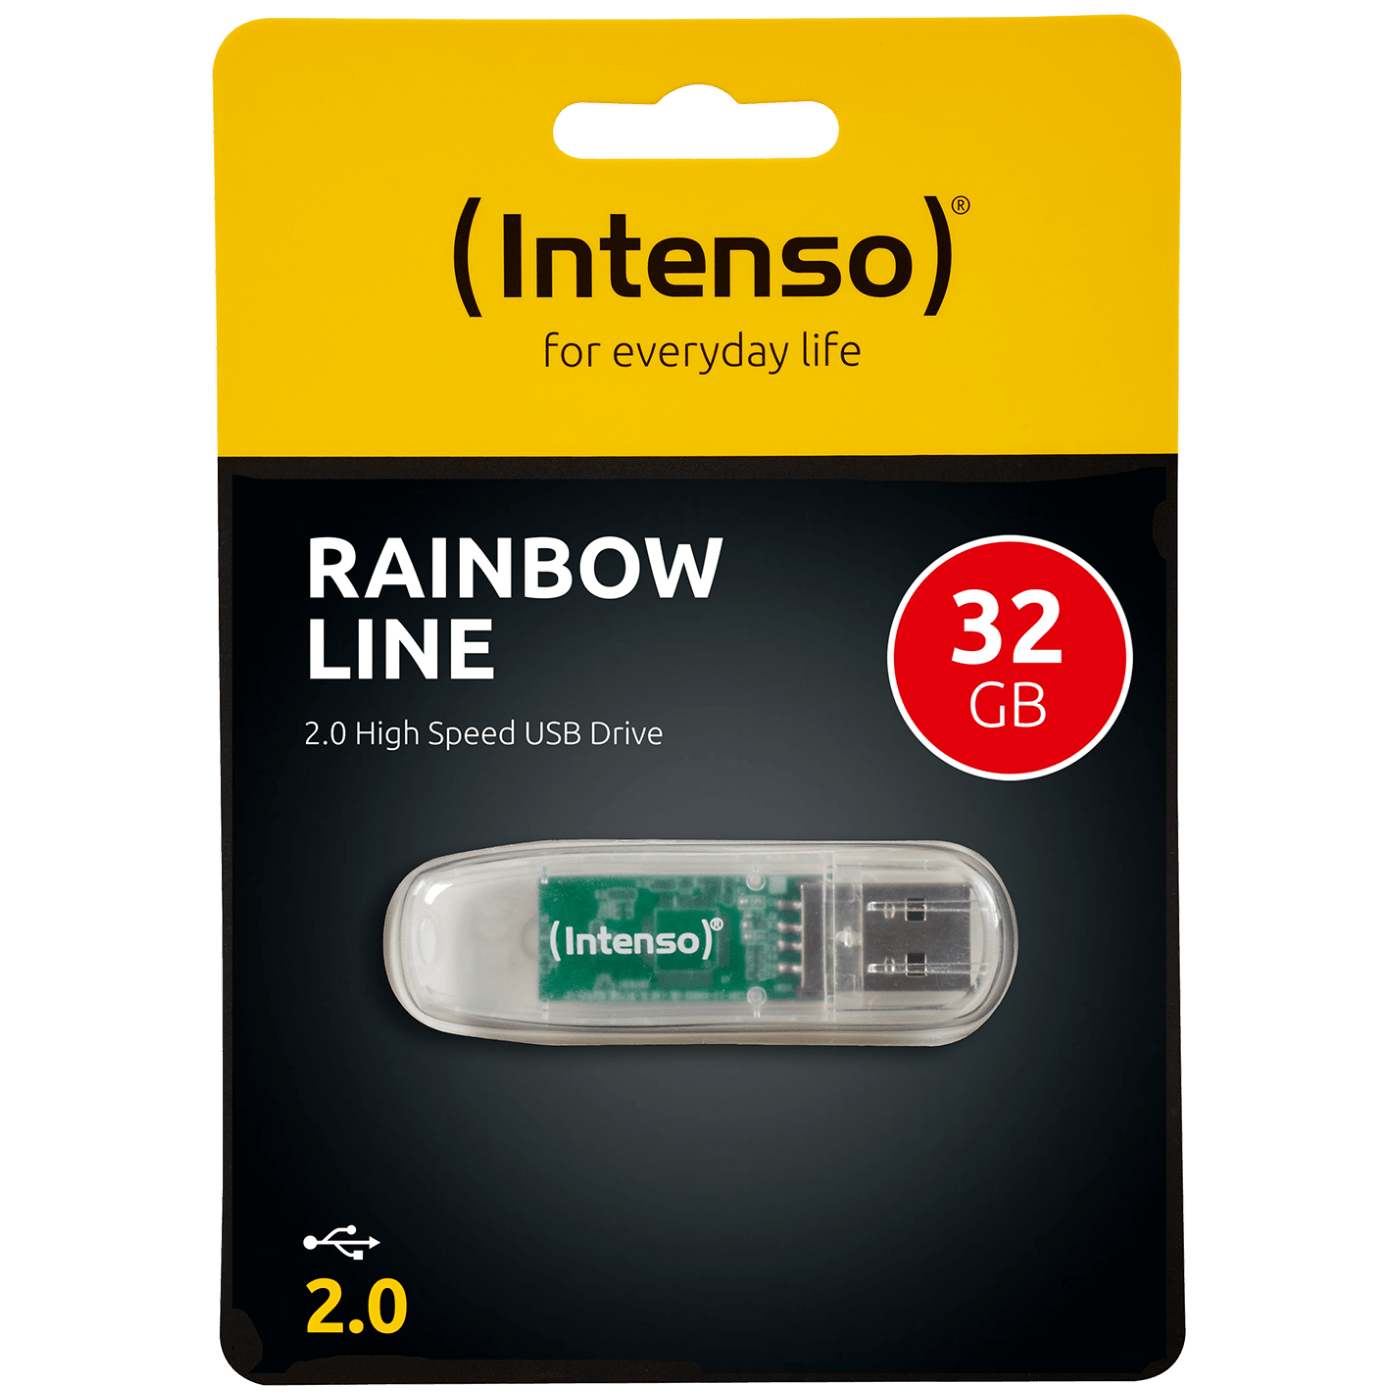 USB2.0-32GB/Rainbow